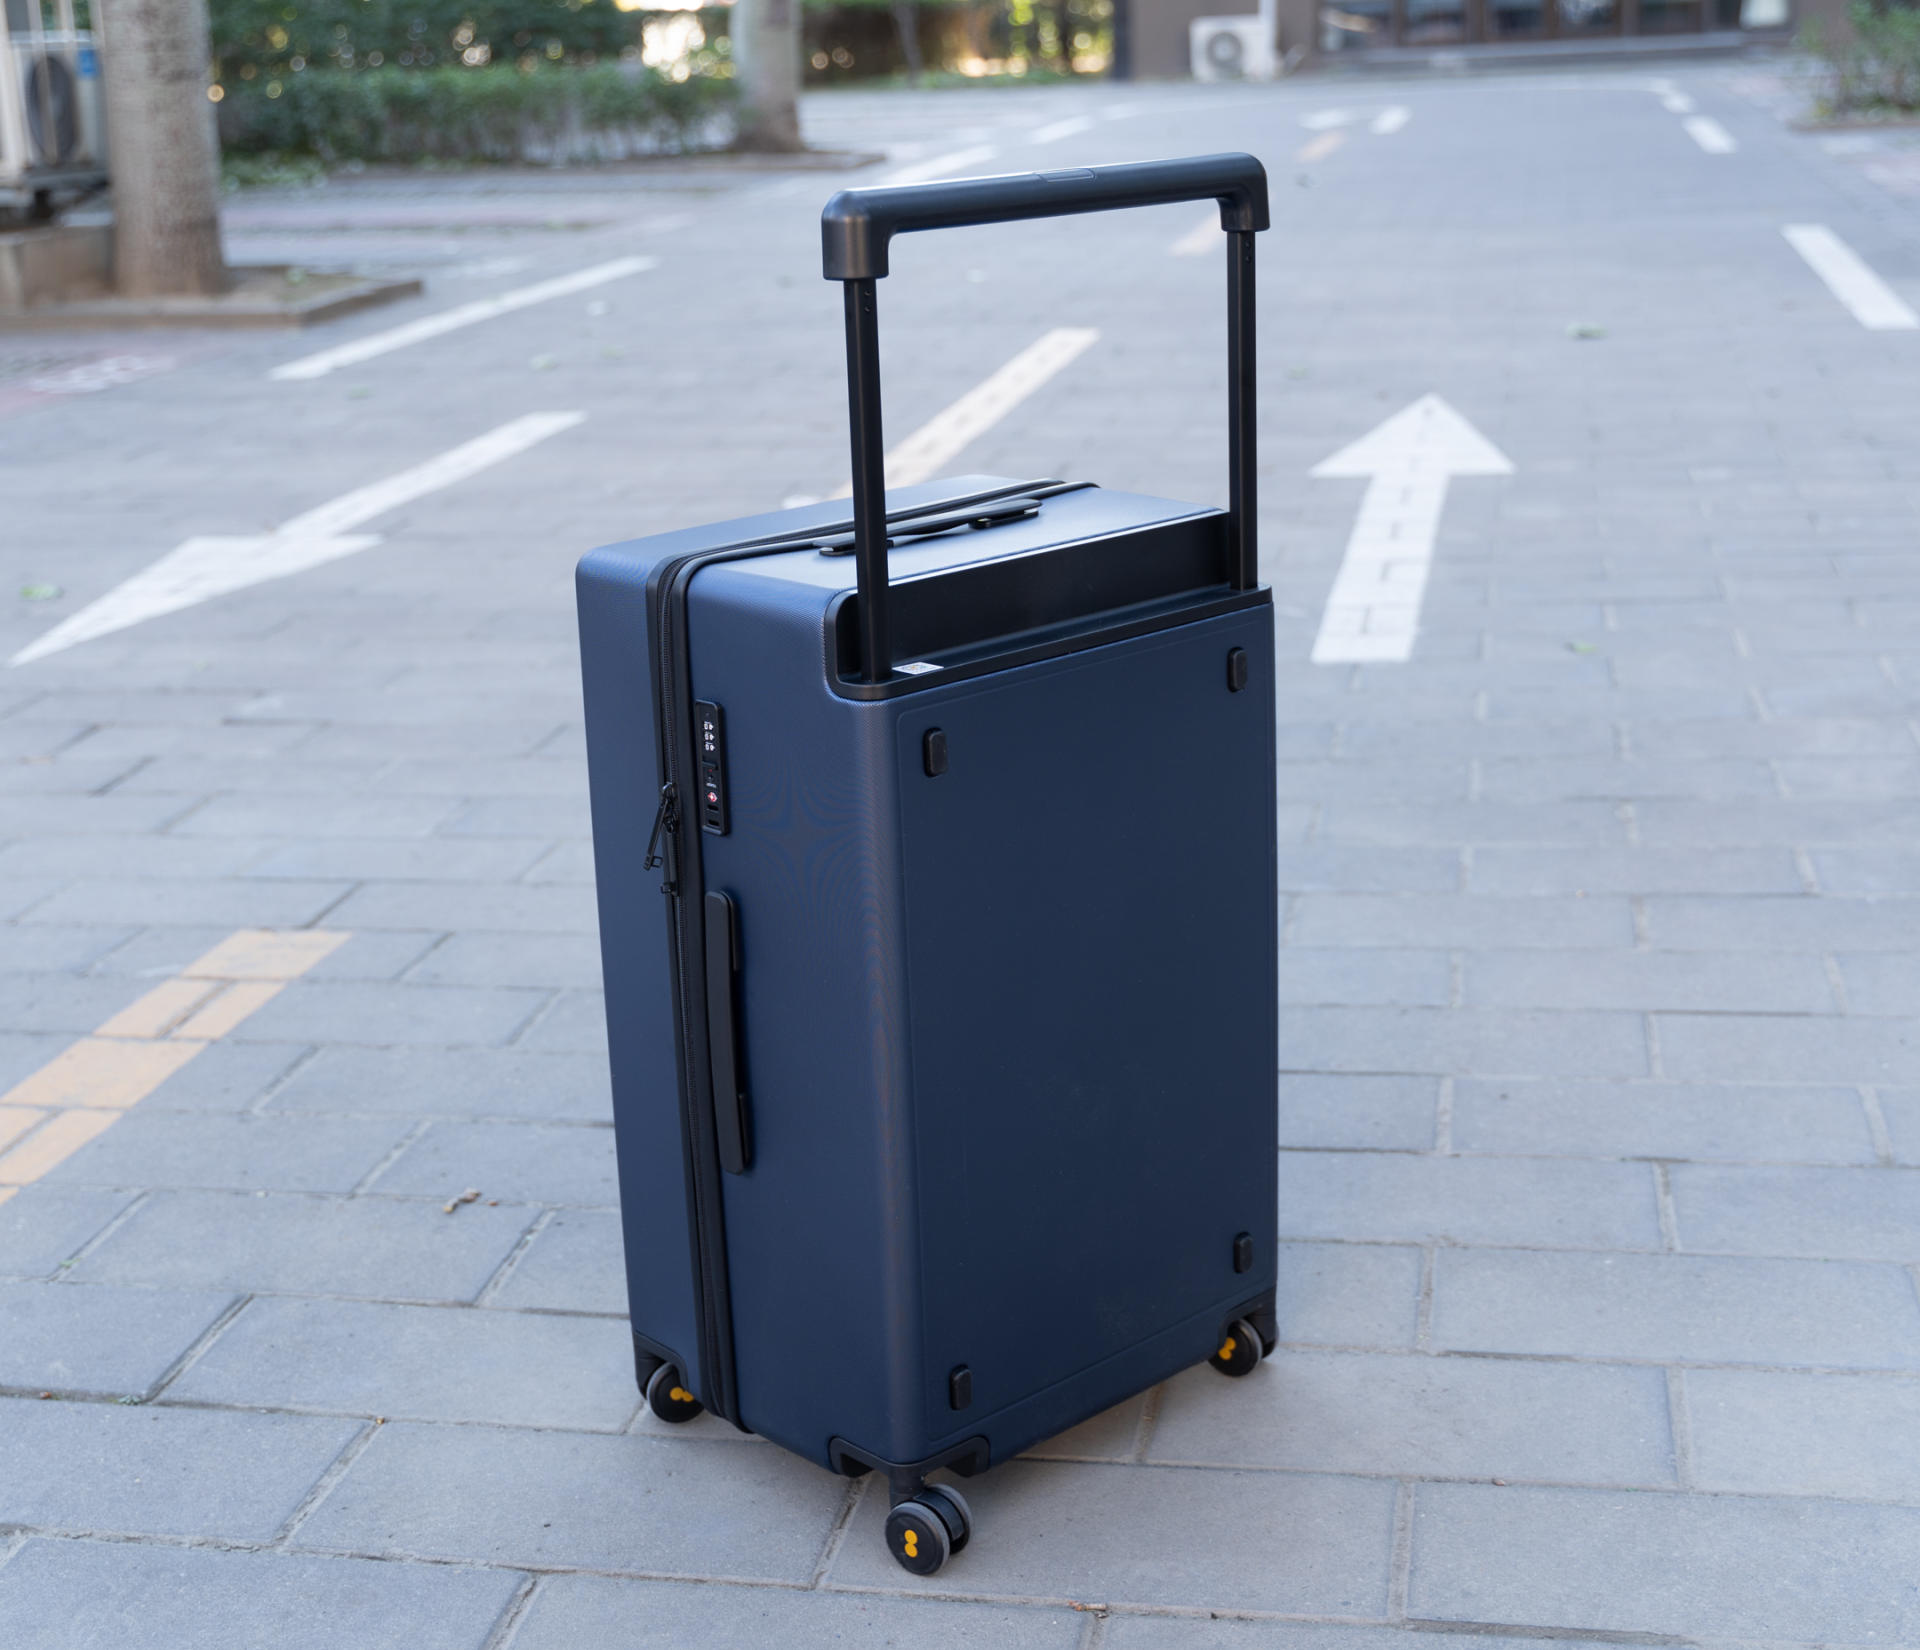 旅游生活家必备:地平线8号26寸宽拉杆行李箱